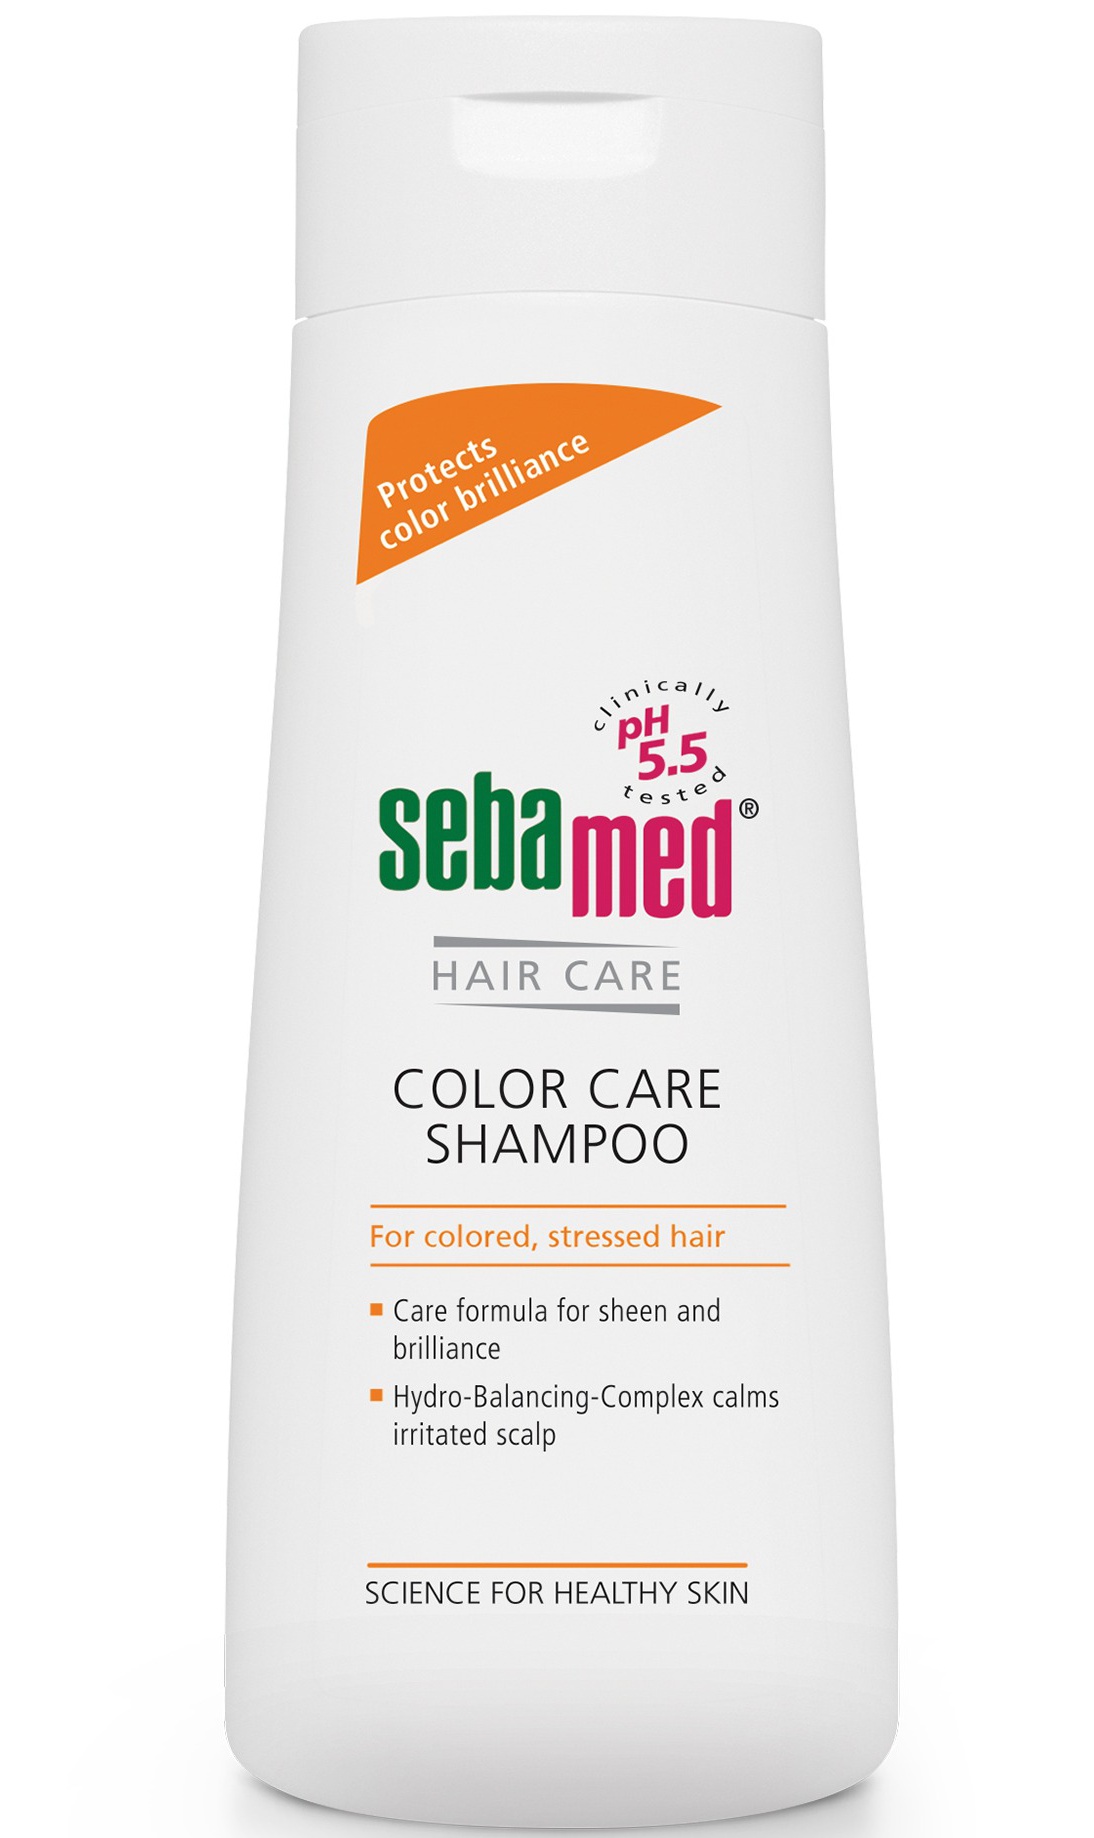 Sebamed Color Care Shampoo